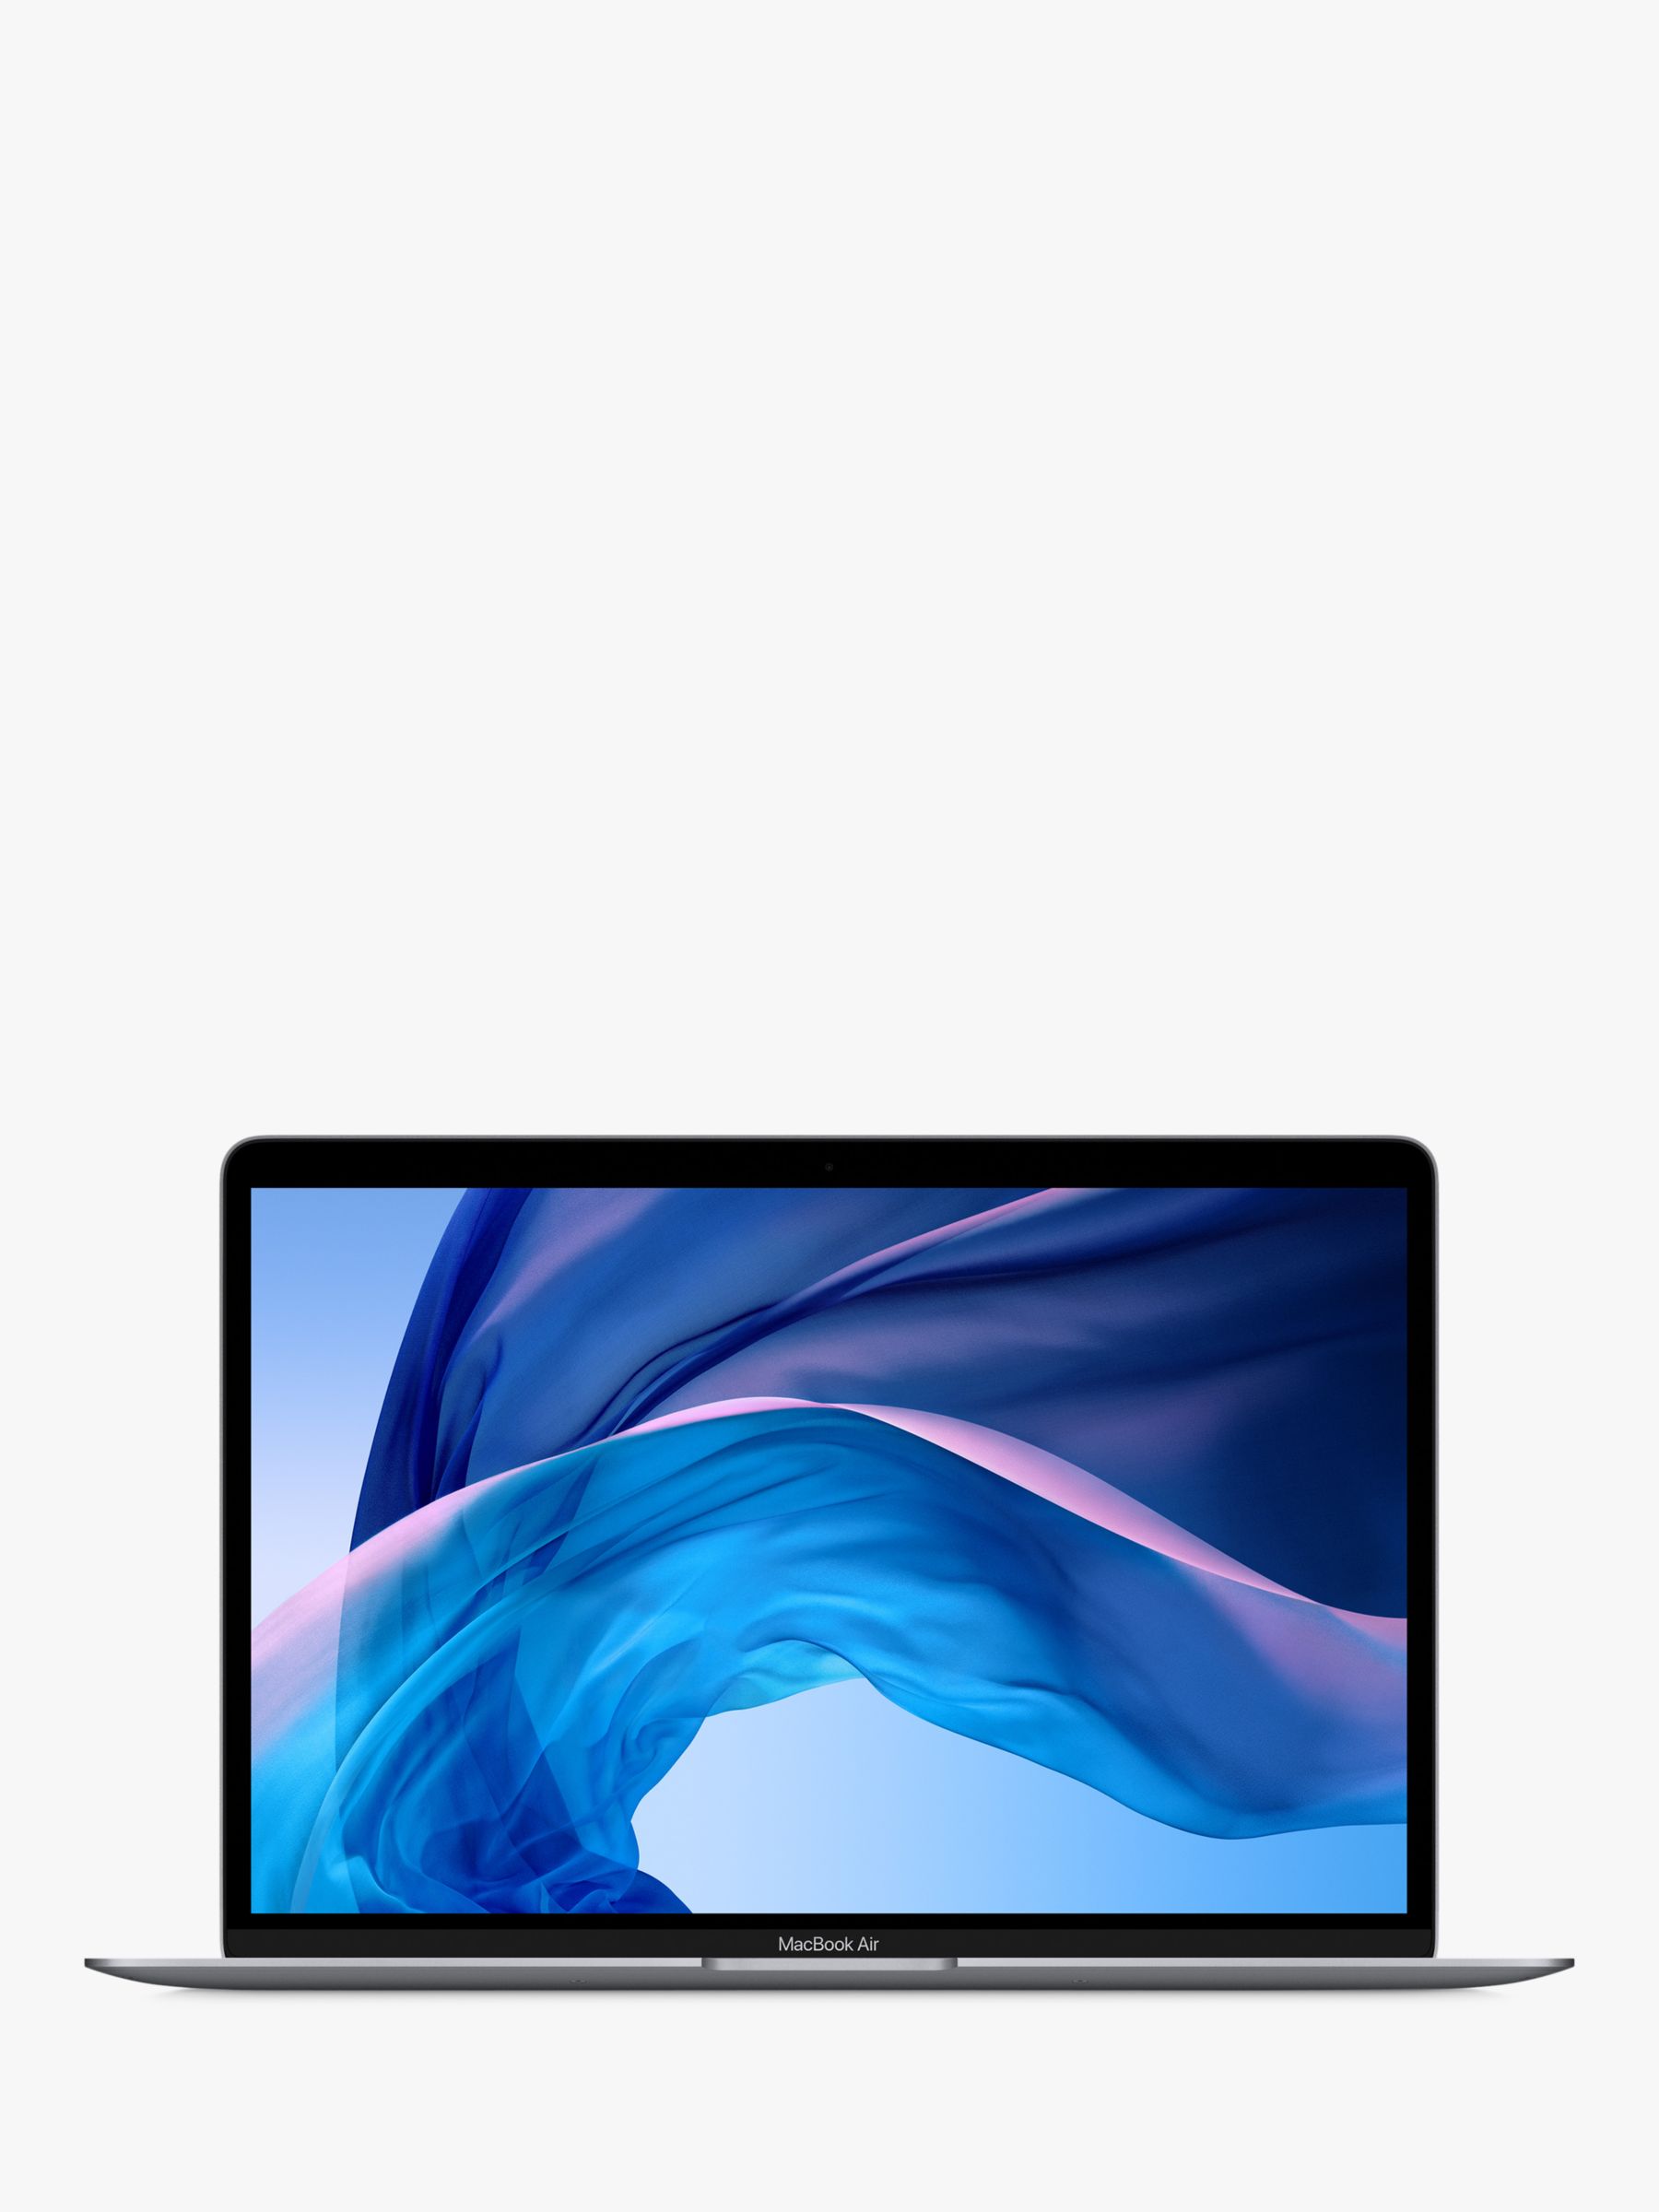 2020 Apple MacBook Air 13.3" Retina Display, Intel Core i3, 8GB RAM, 256GB SSD